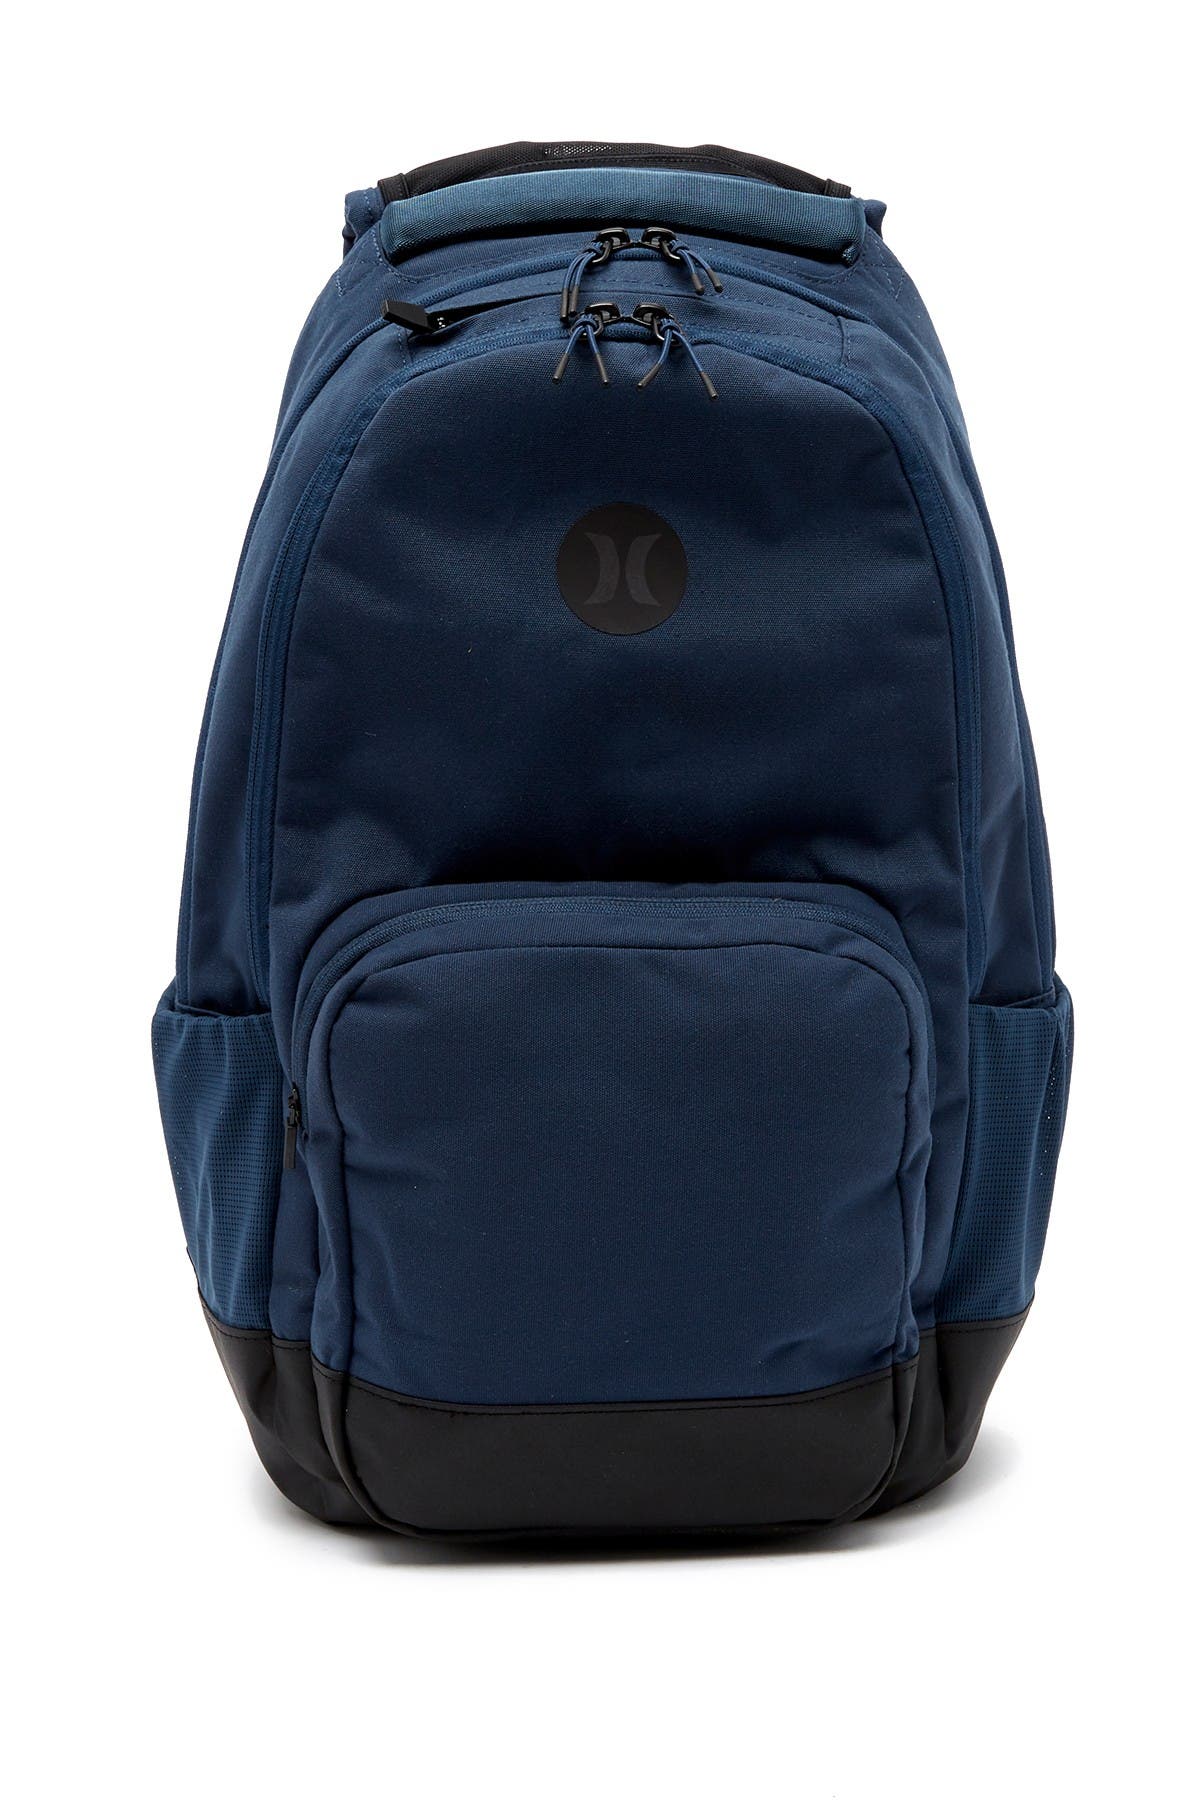 Hurley | Surge II Backpack | Nordstrom Rack